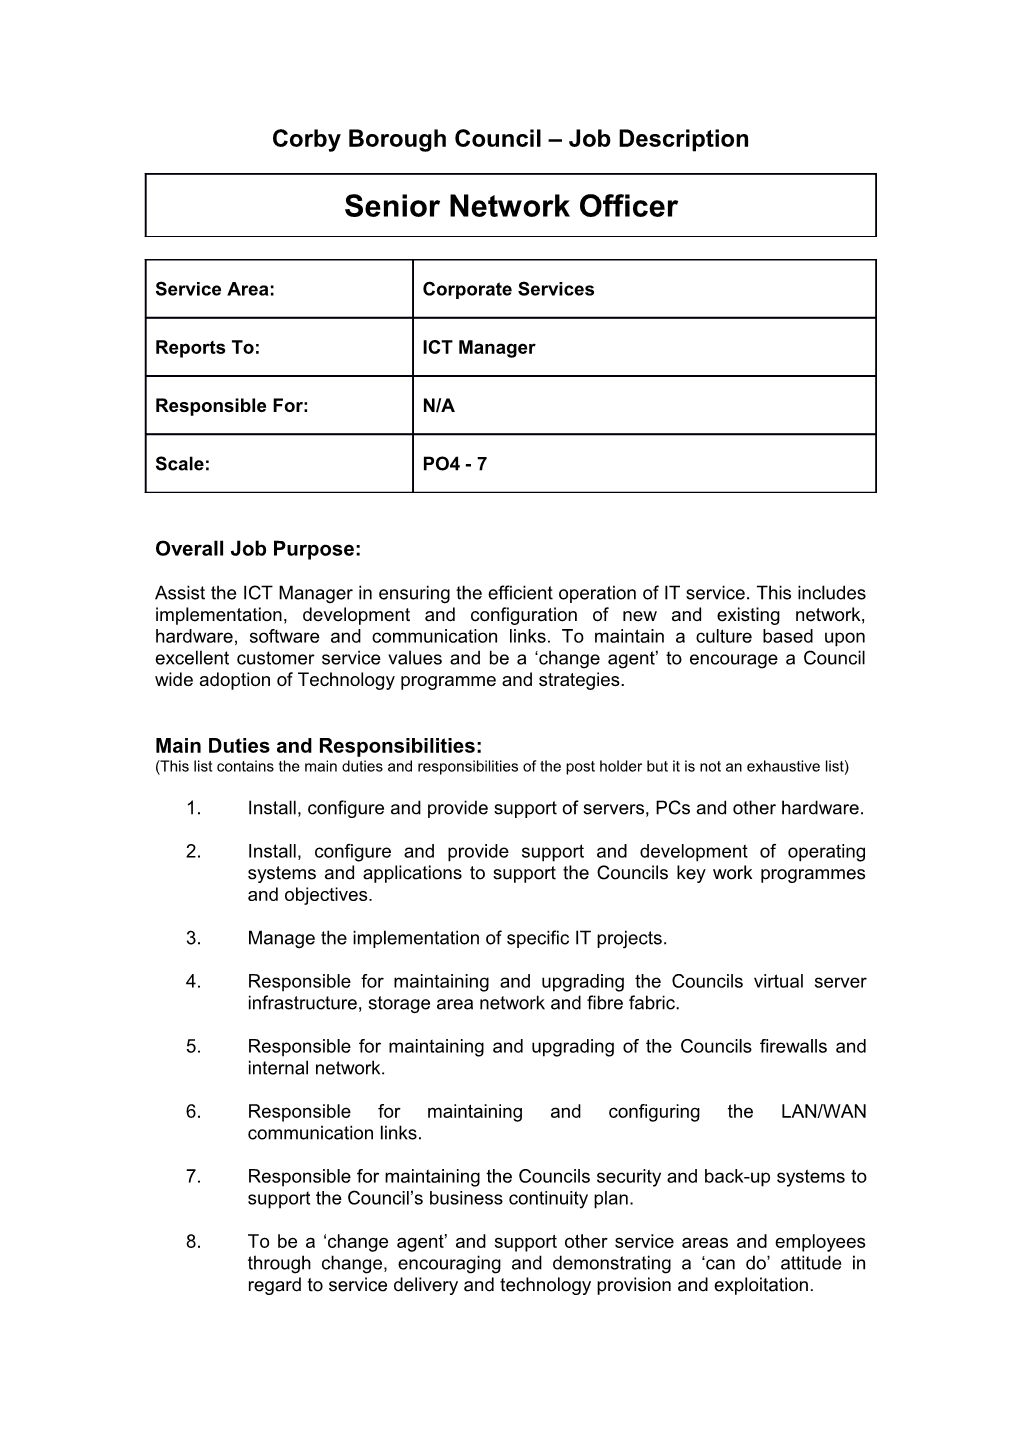 Corby Borough Council Job Description s3